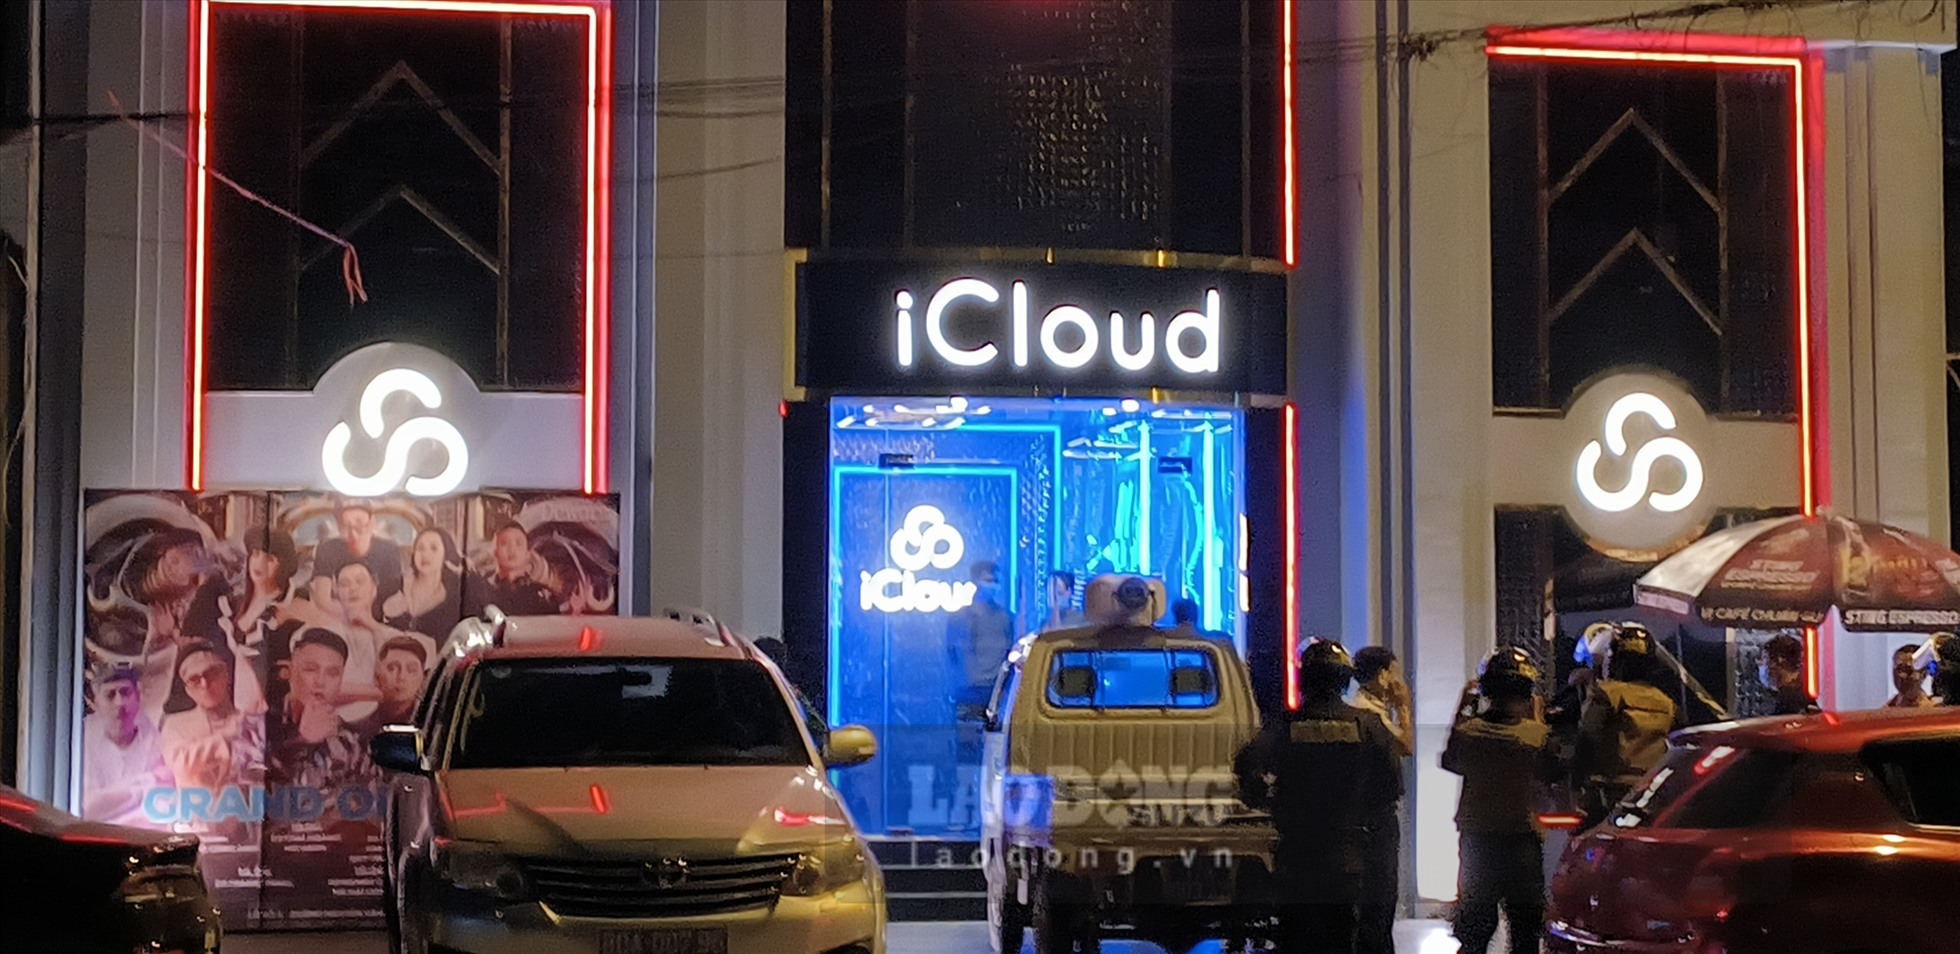 Quán bar club iCloud bị kiểm tra đột xuất đêm ngày 14, rạng sáng ngày 15.4 gây xôn xao dư luận tại Thái Bình. Ảnh: Trung Du